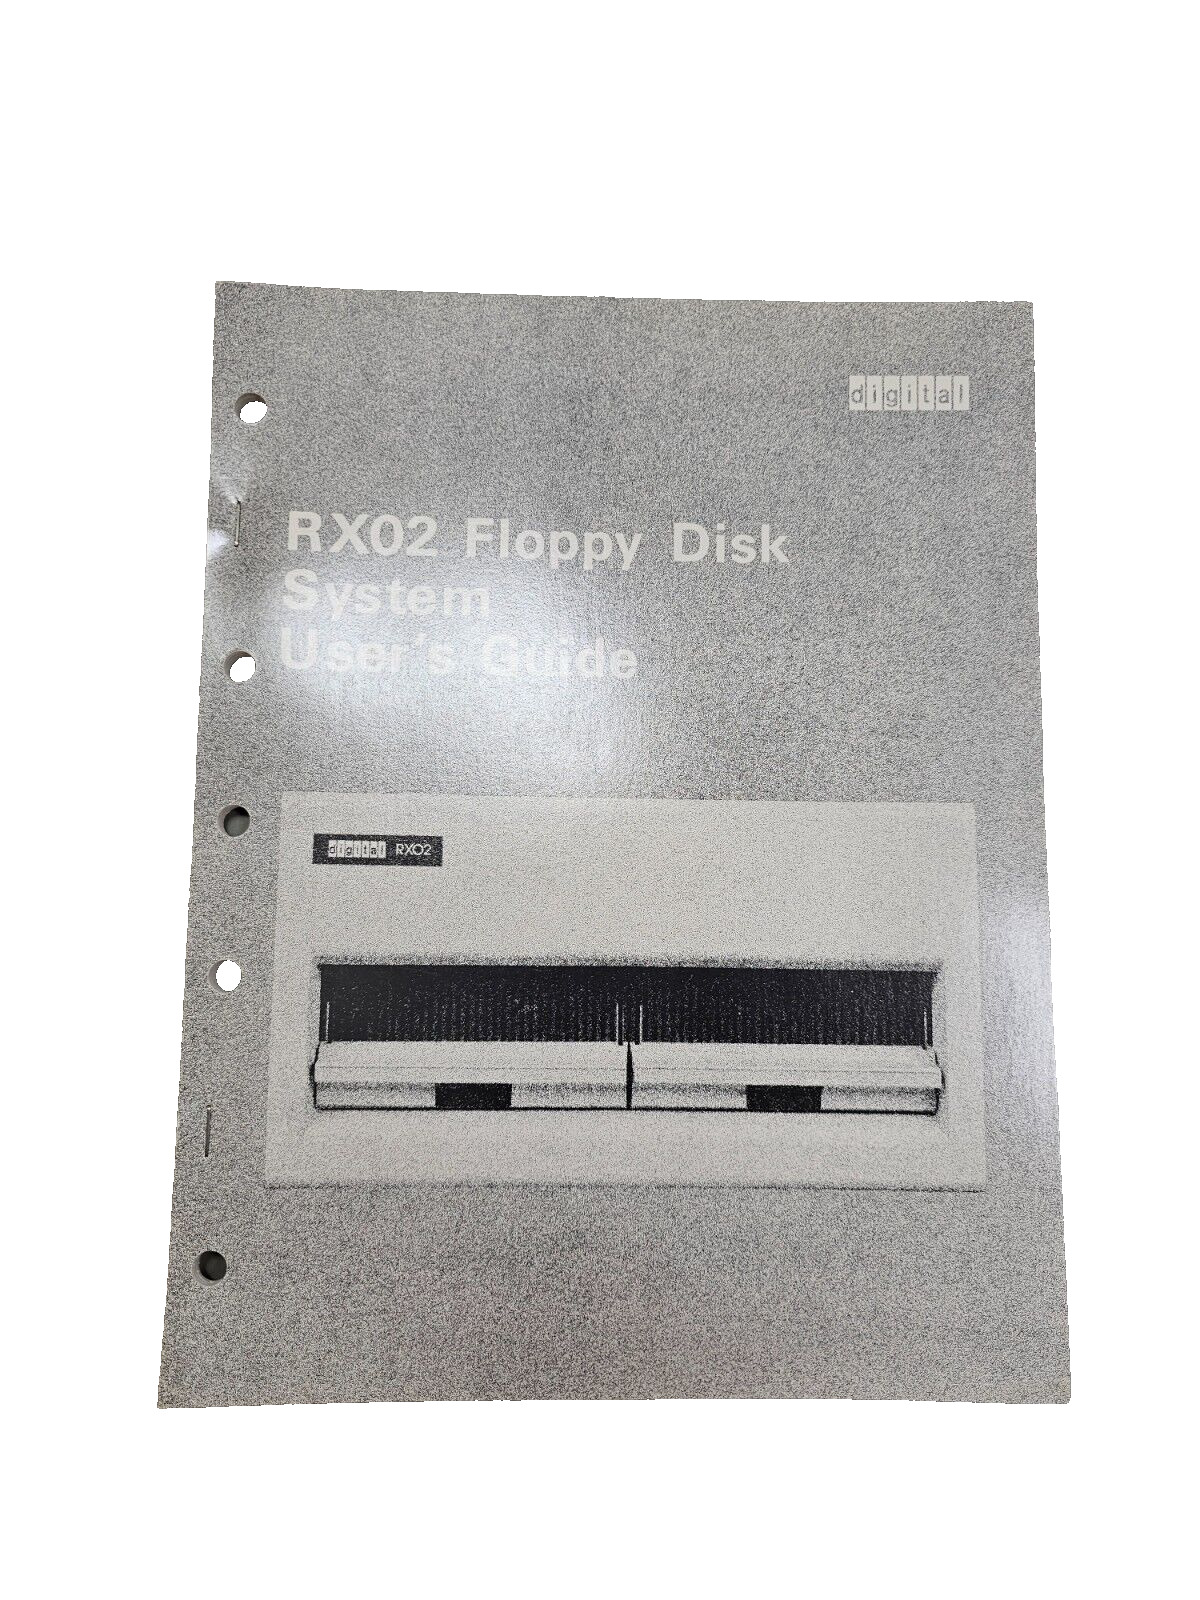 Vintage 1978 Digital DEC RX02 Floppy Disk System User's Guide 1st Edition